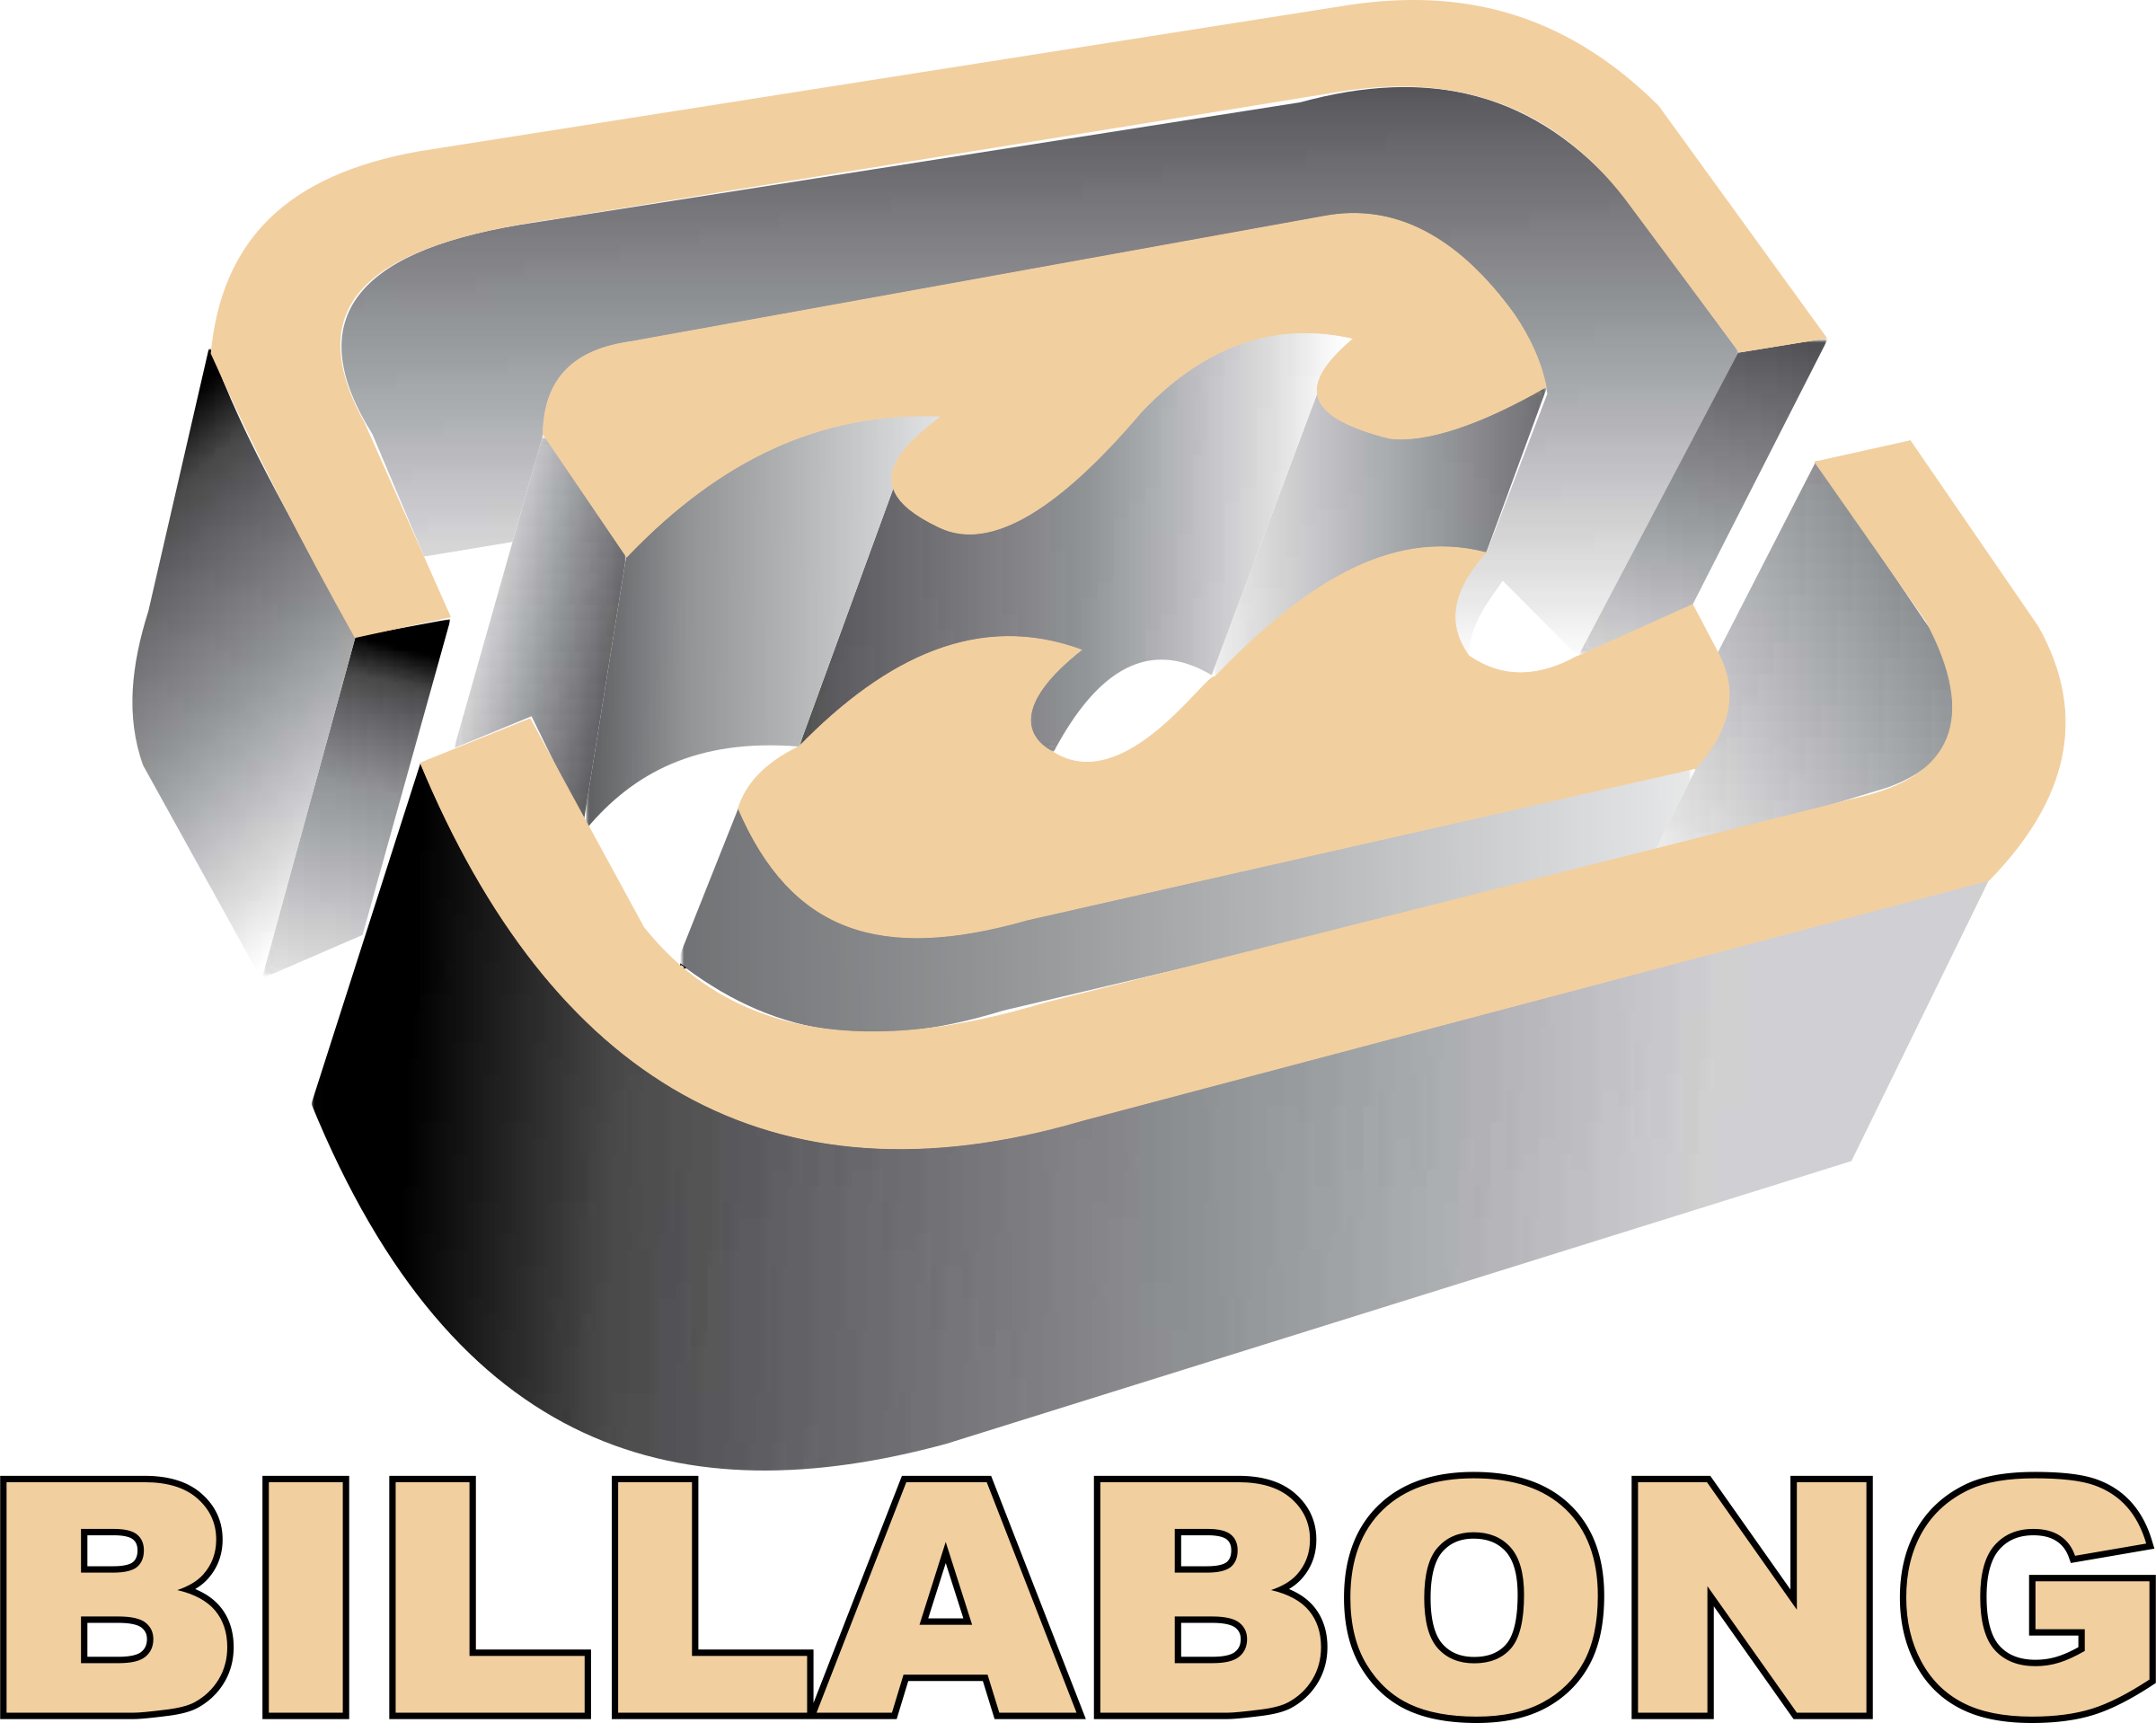 Billabong - Billabong Wallpaper (2281927) - Fanpop